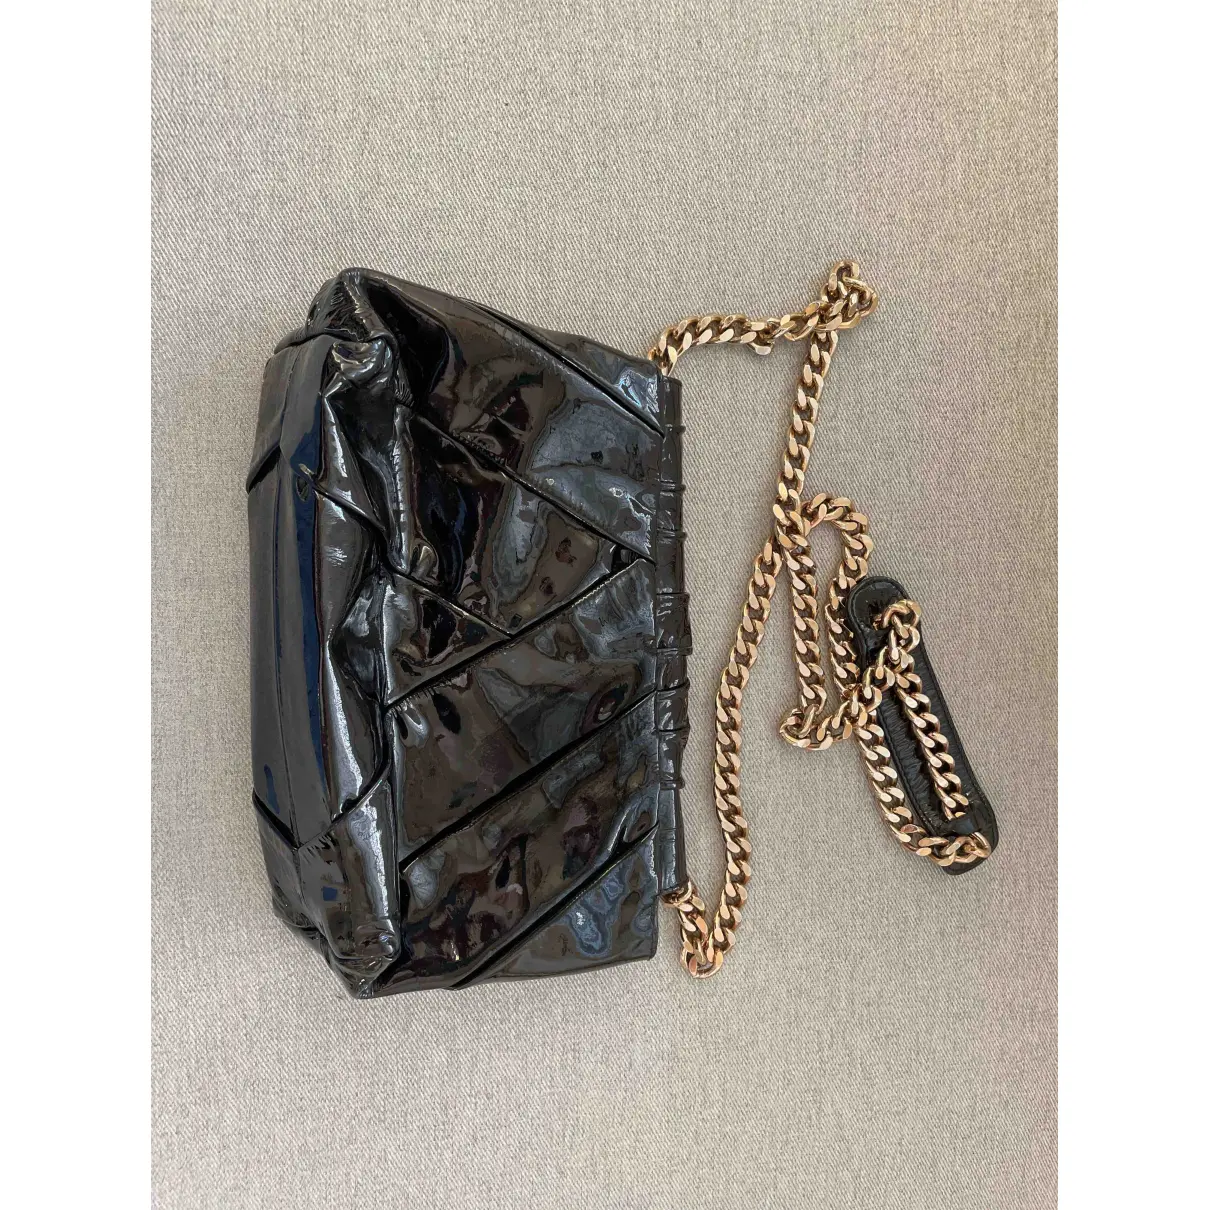 Buy Le Silla Leather handbag online